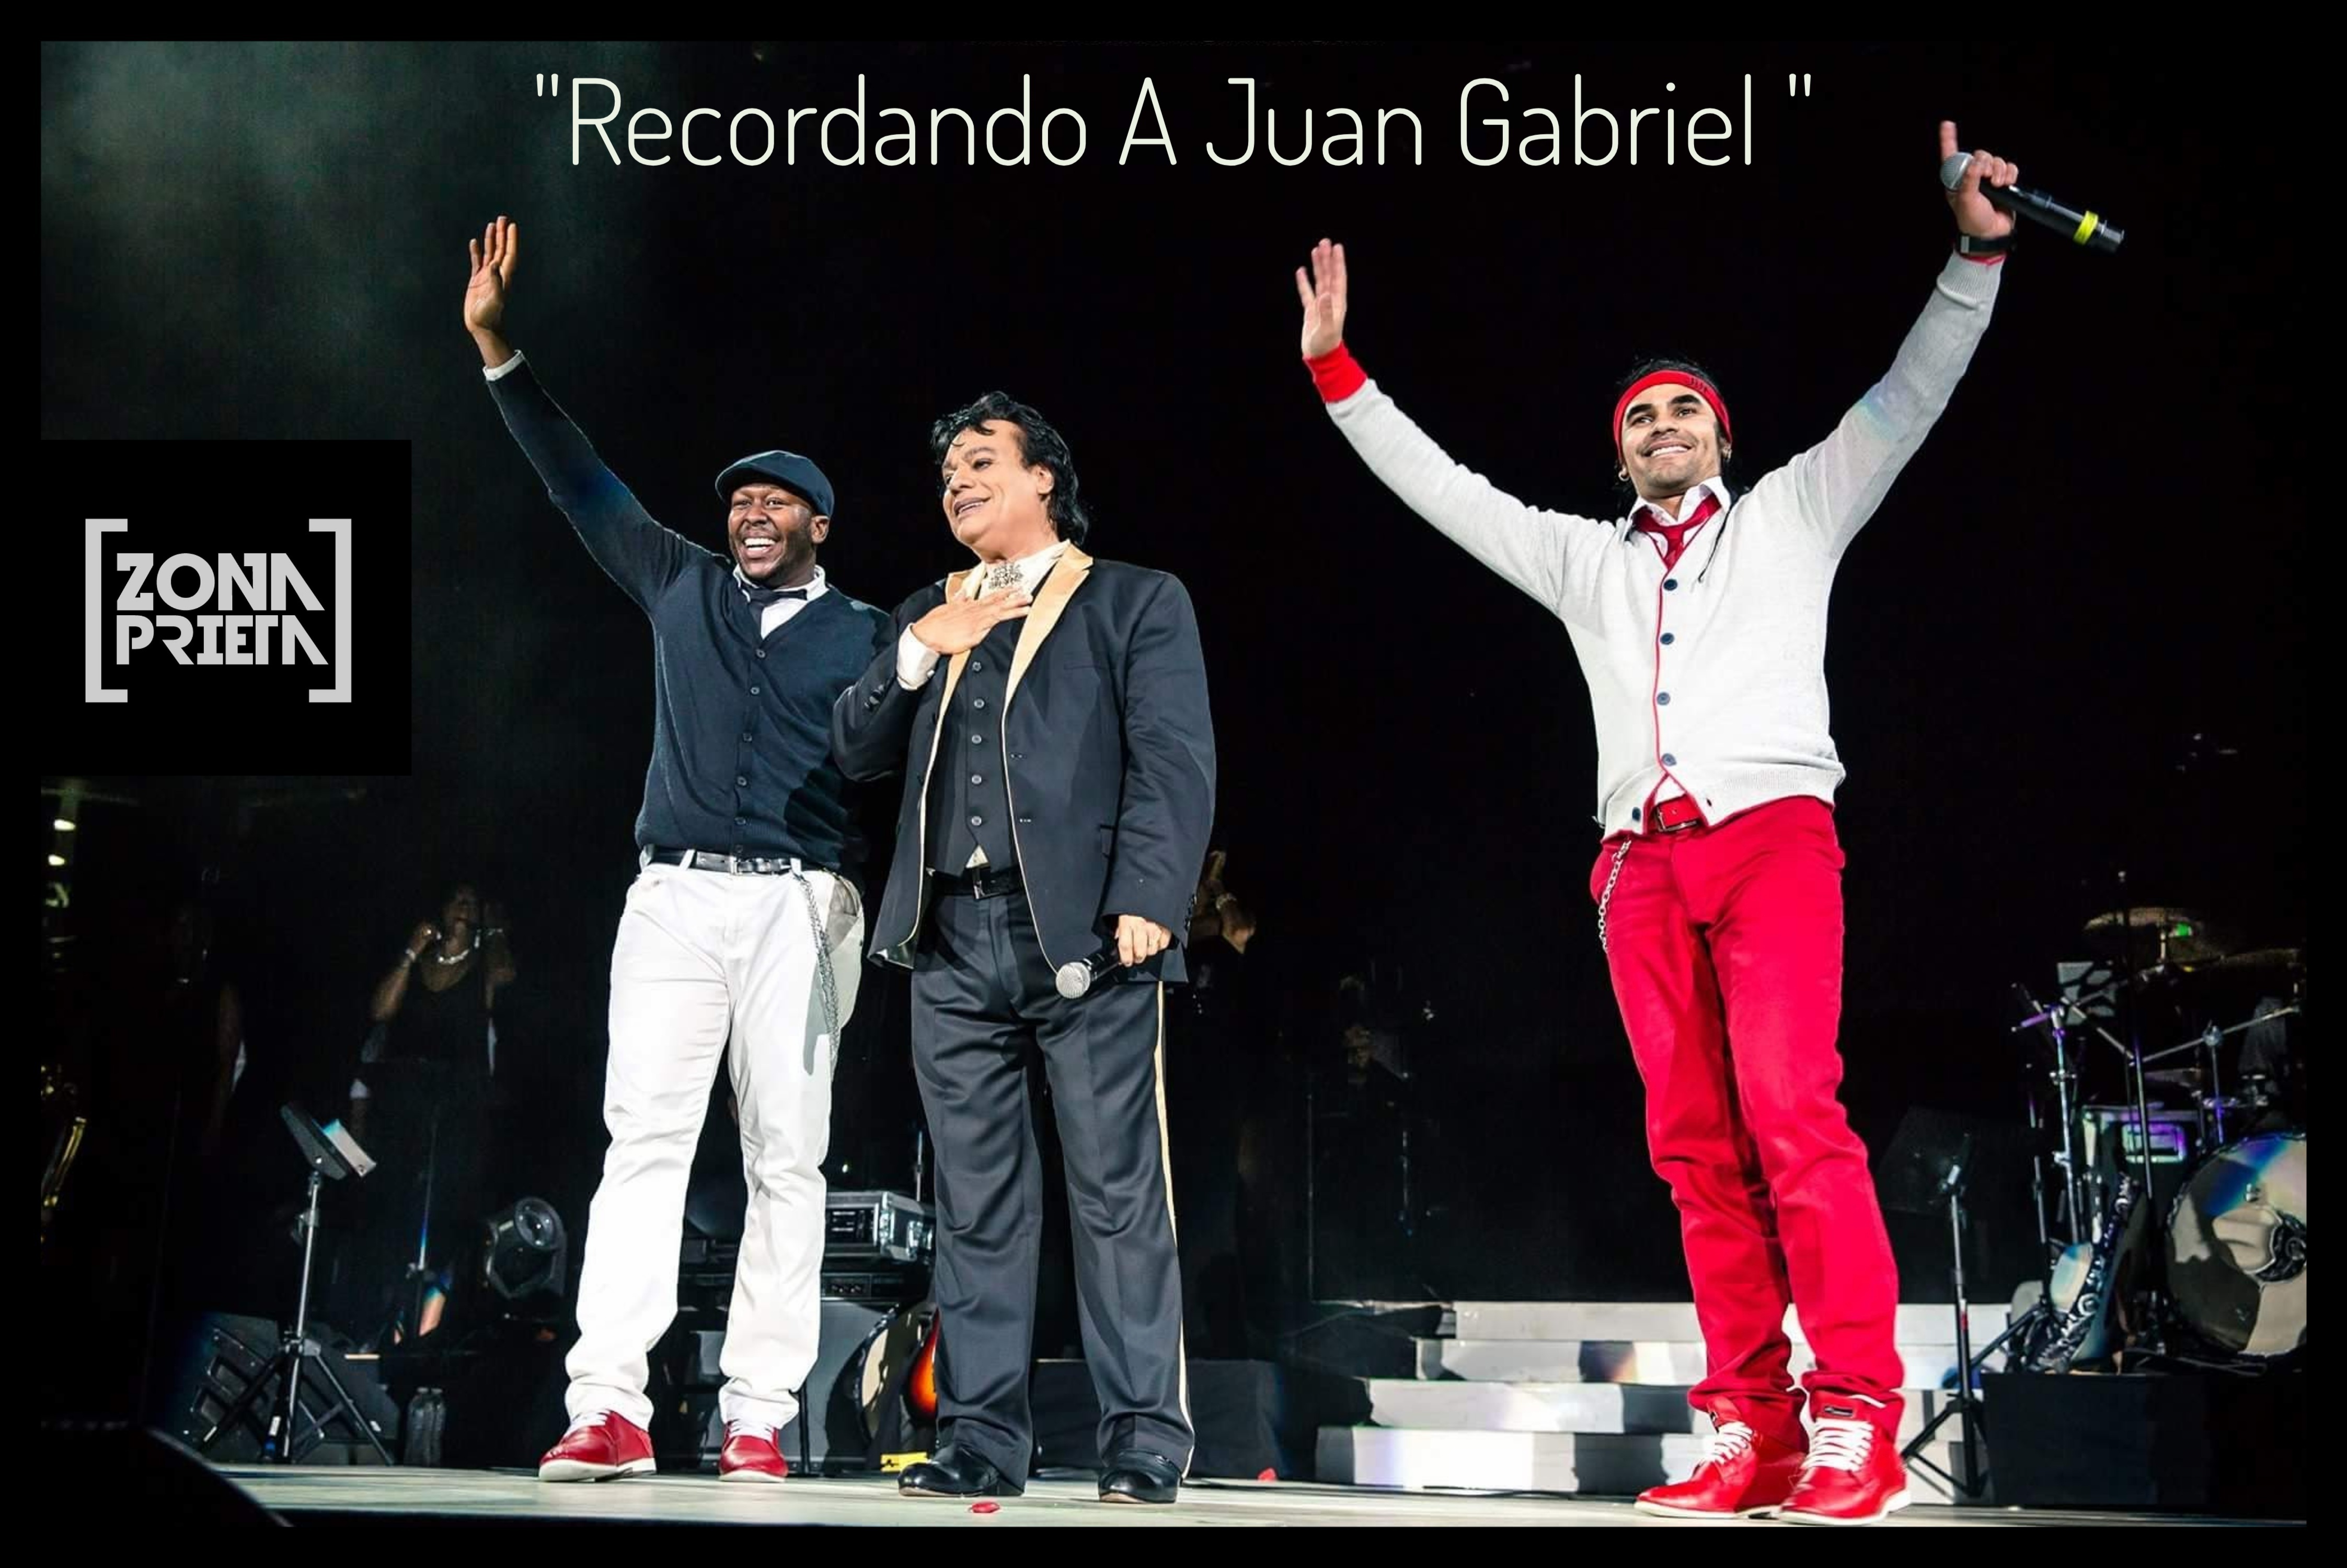 ZONA PRIETA lanza “Recordando a Juan Gabriel”